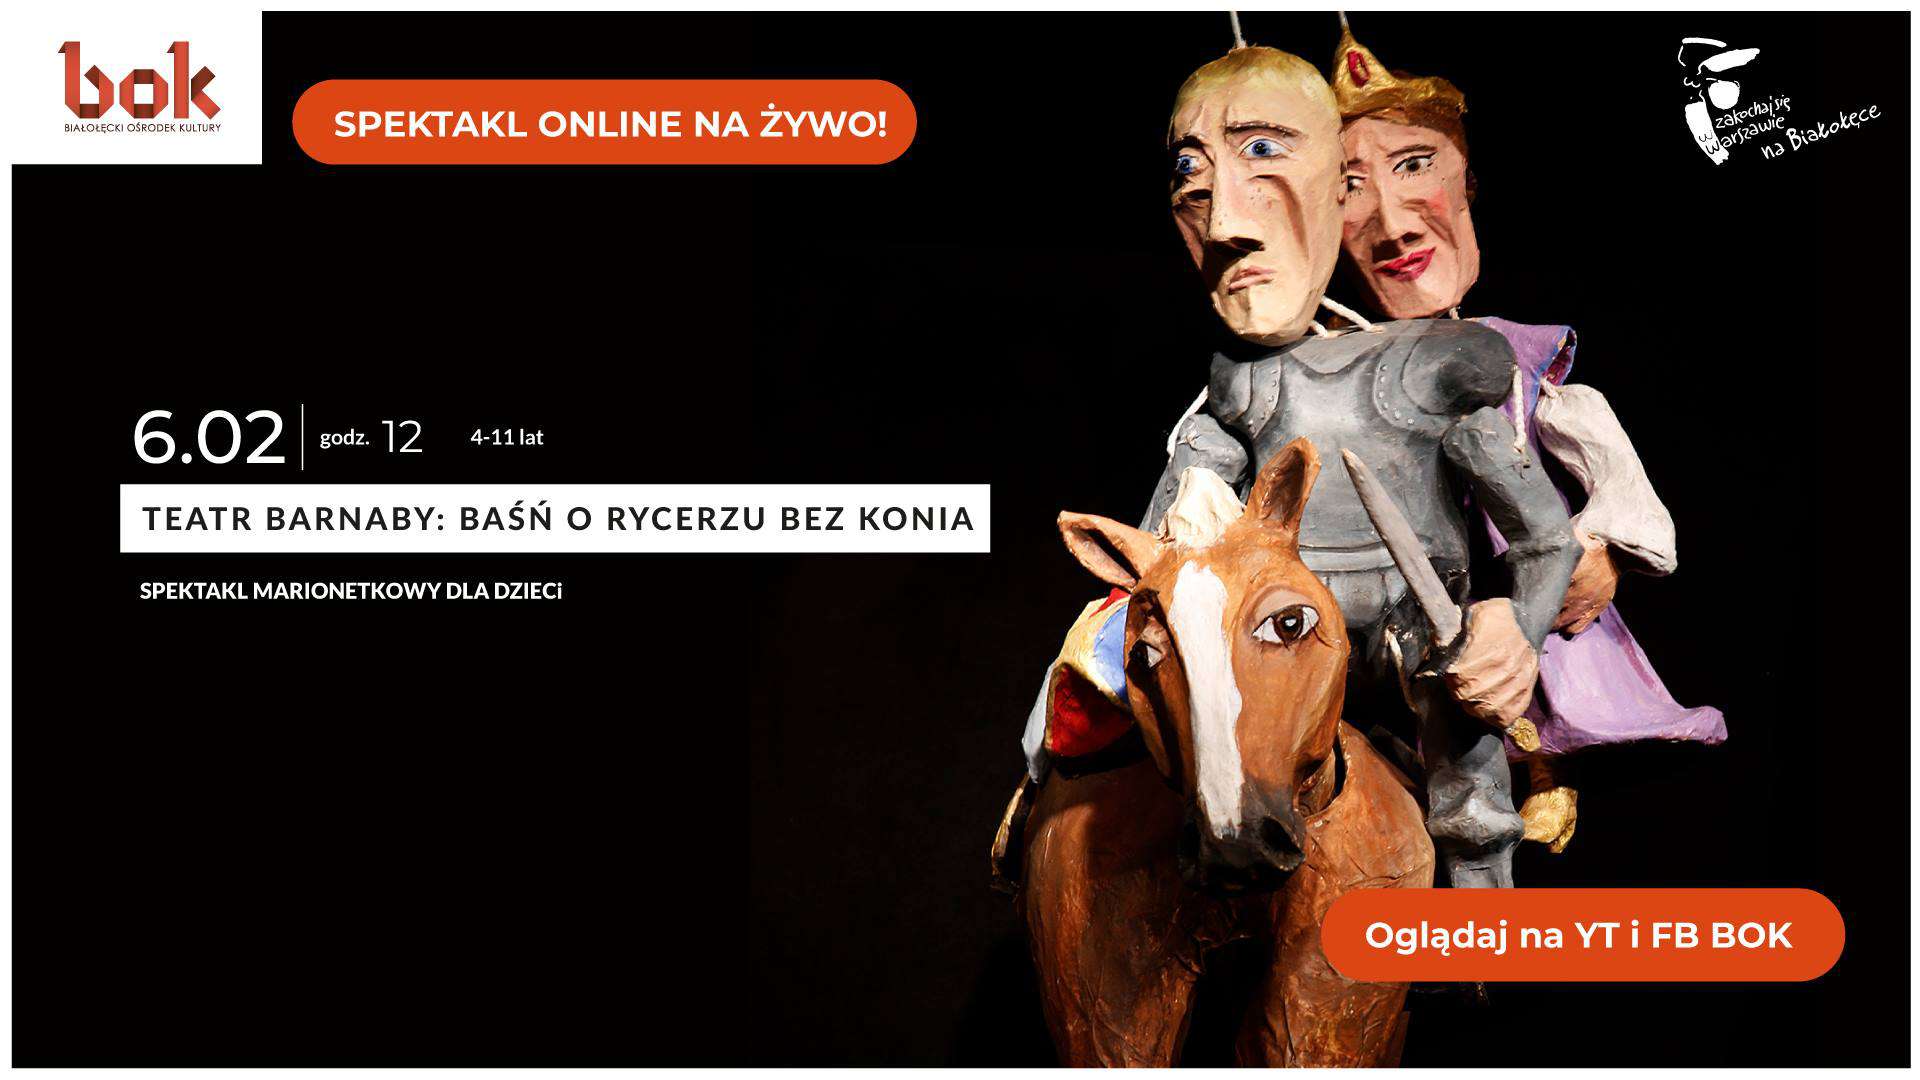 Teatr Barnaby „Baśń o rycerzu bez konia” – spektakl marionetkowy online